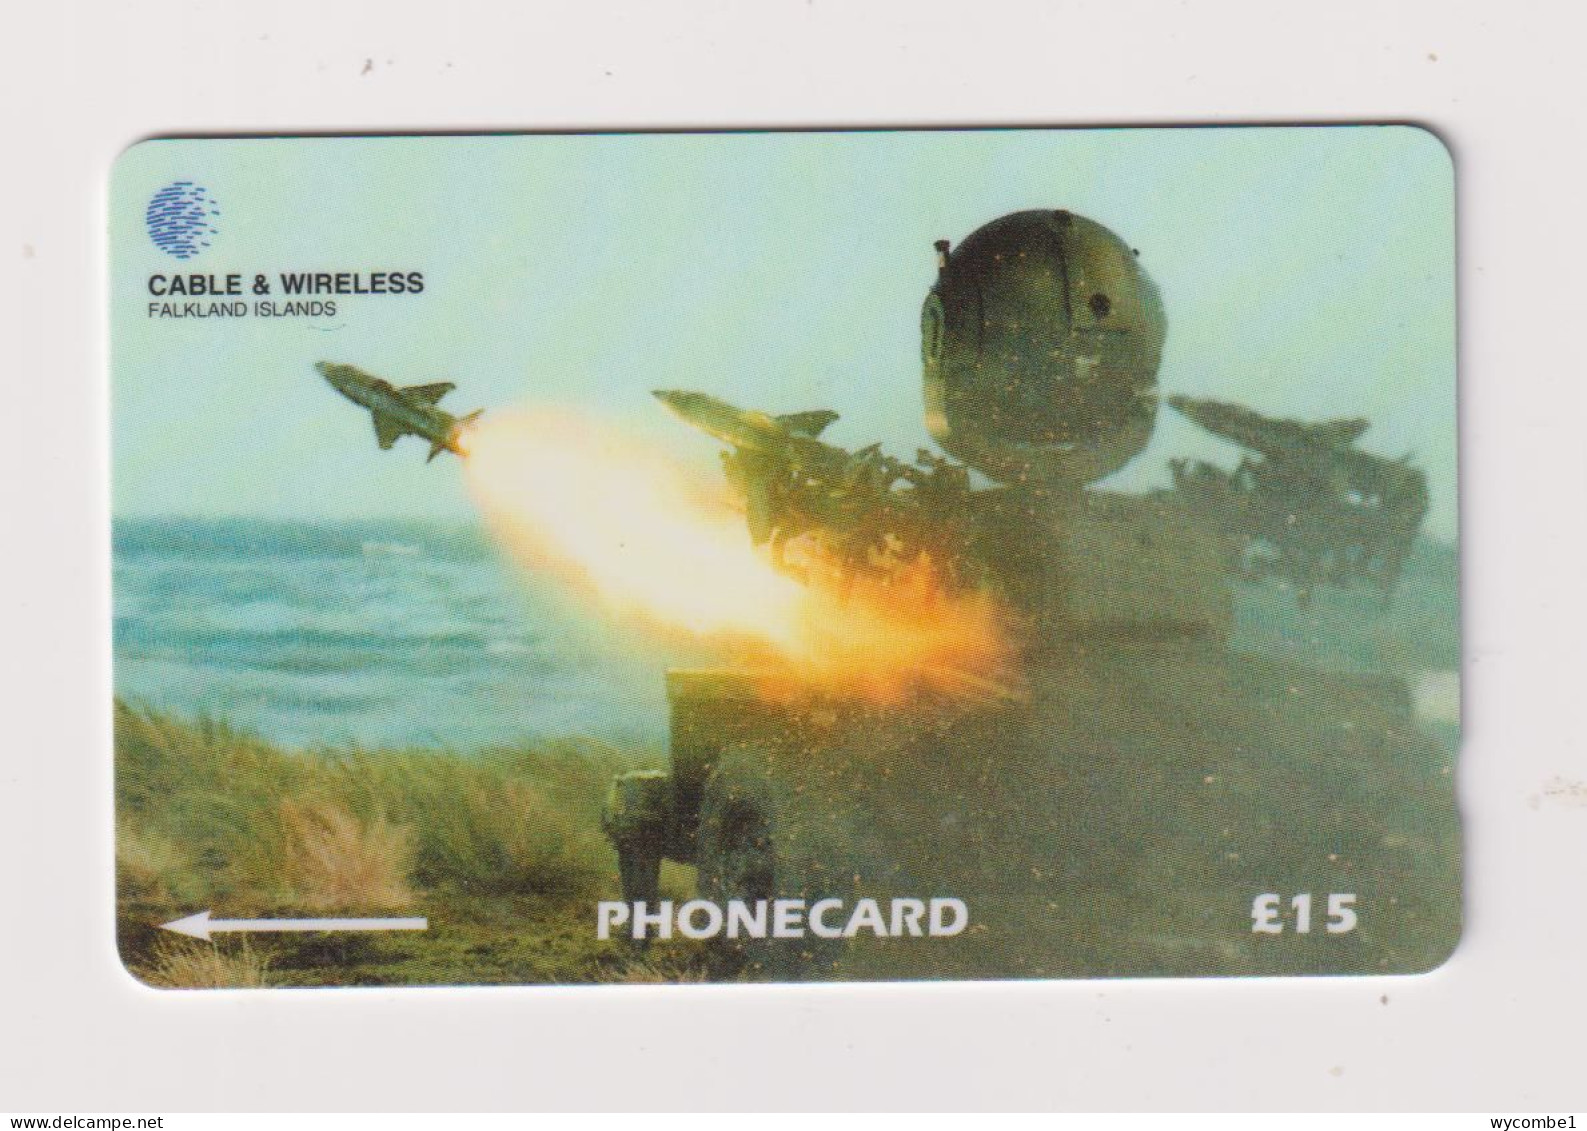 FALKLAND ISLANDS - Missile System Magnetic GPT Phonecard - Falkland